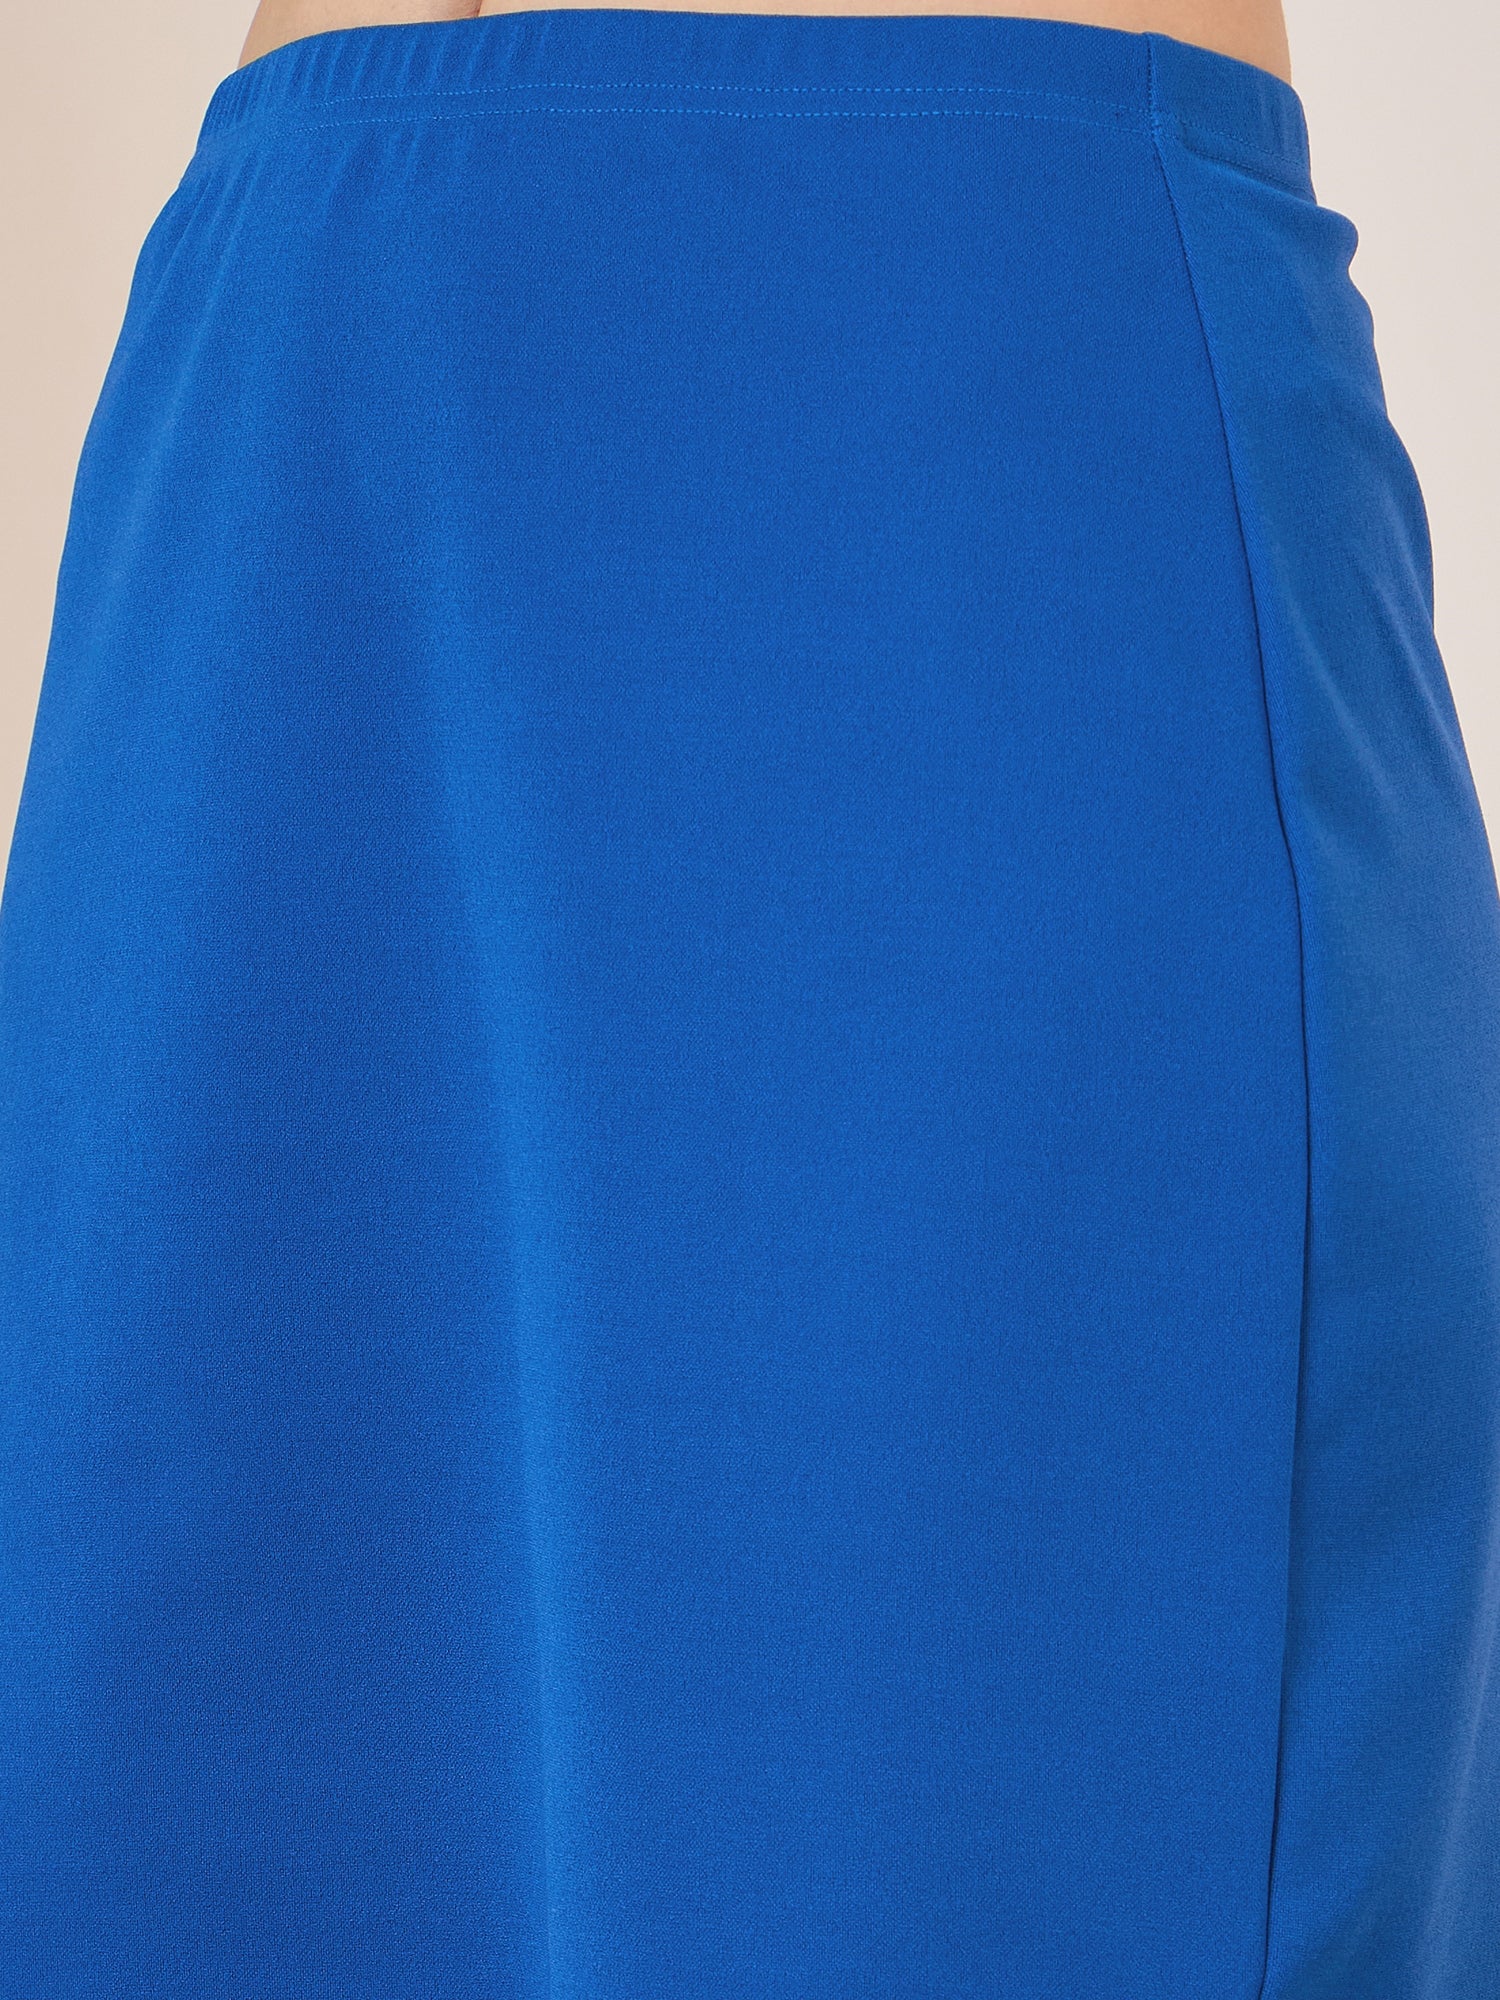 Berrylush Women Solid Blue High-Waisted Slip On Mini Skirt